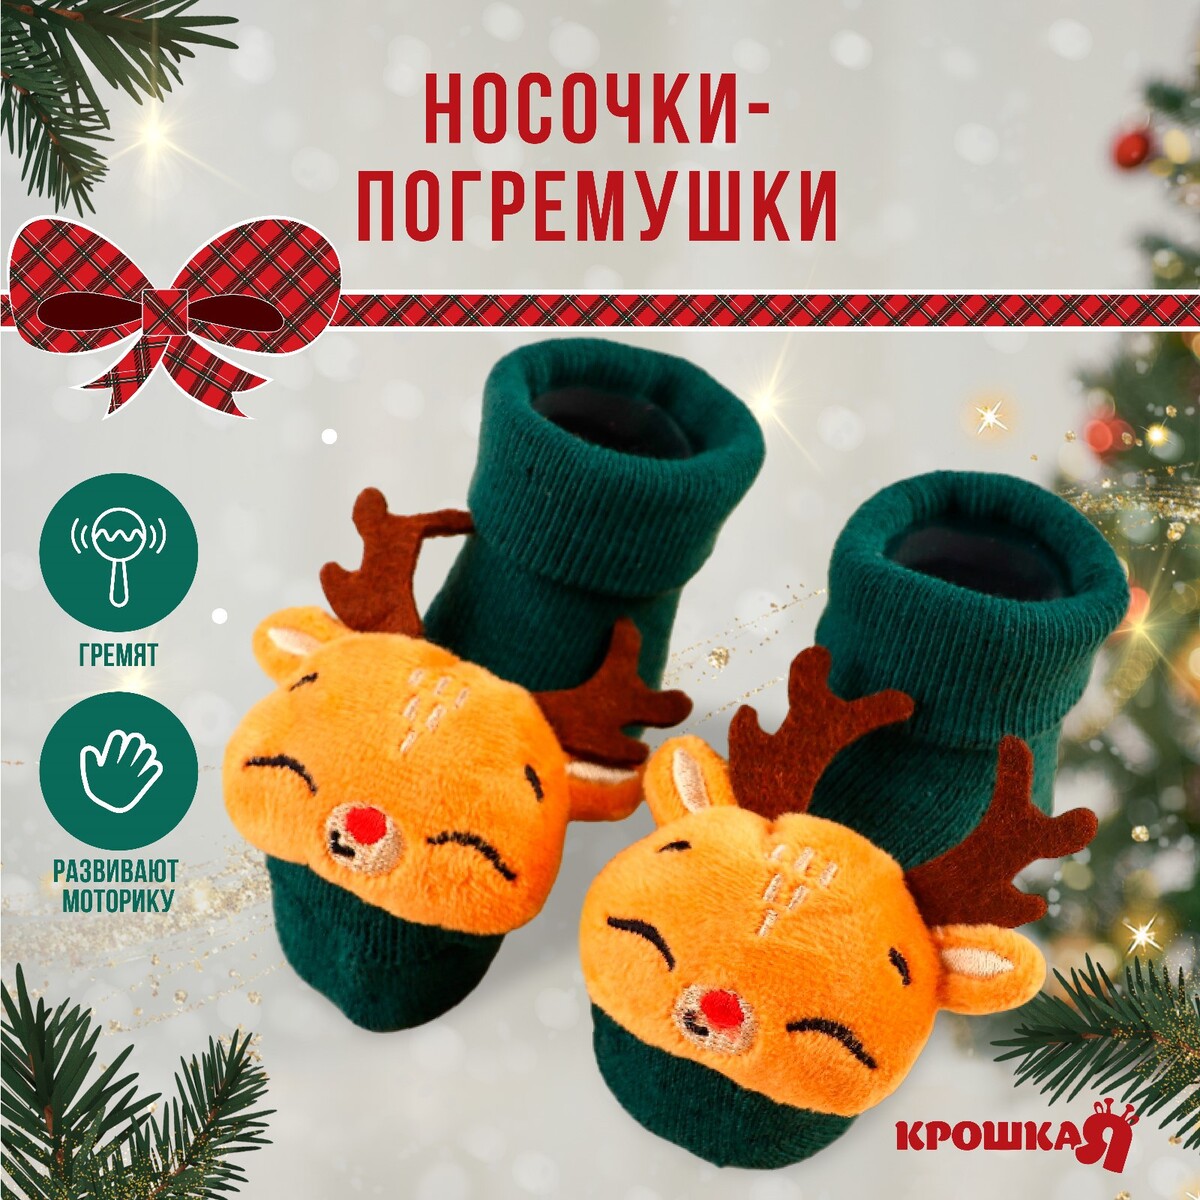 Подарочный набор новогодний: носочки - погремушки на ножки